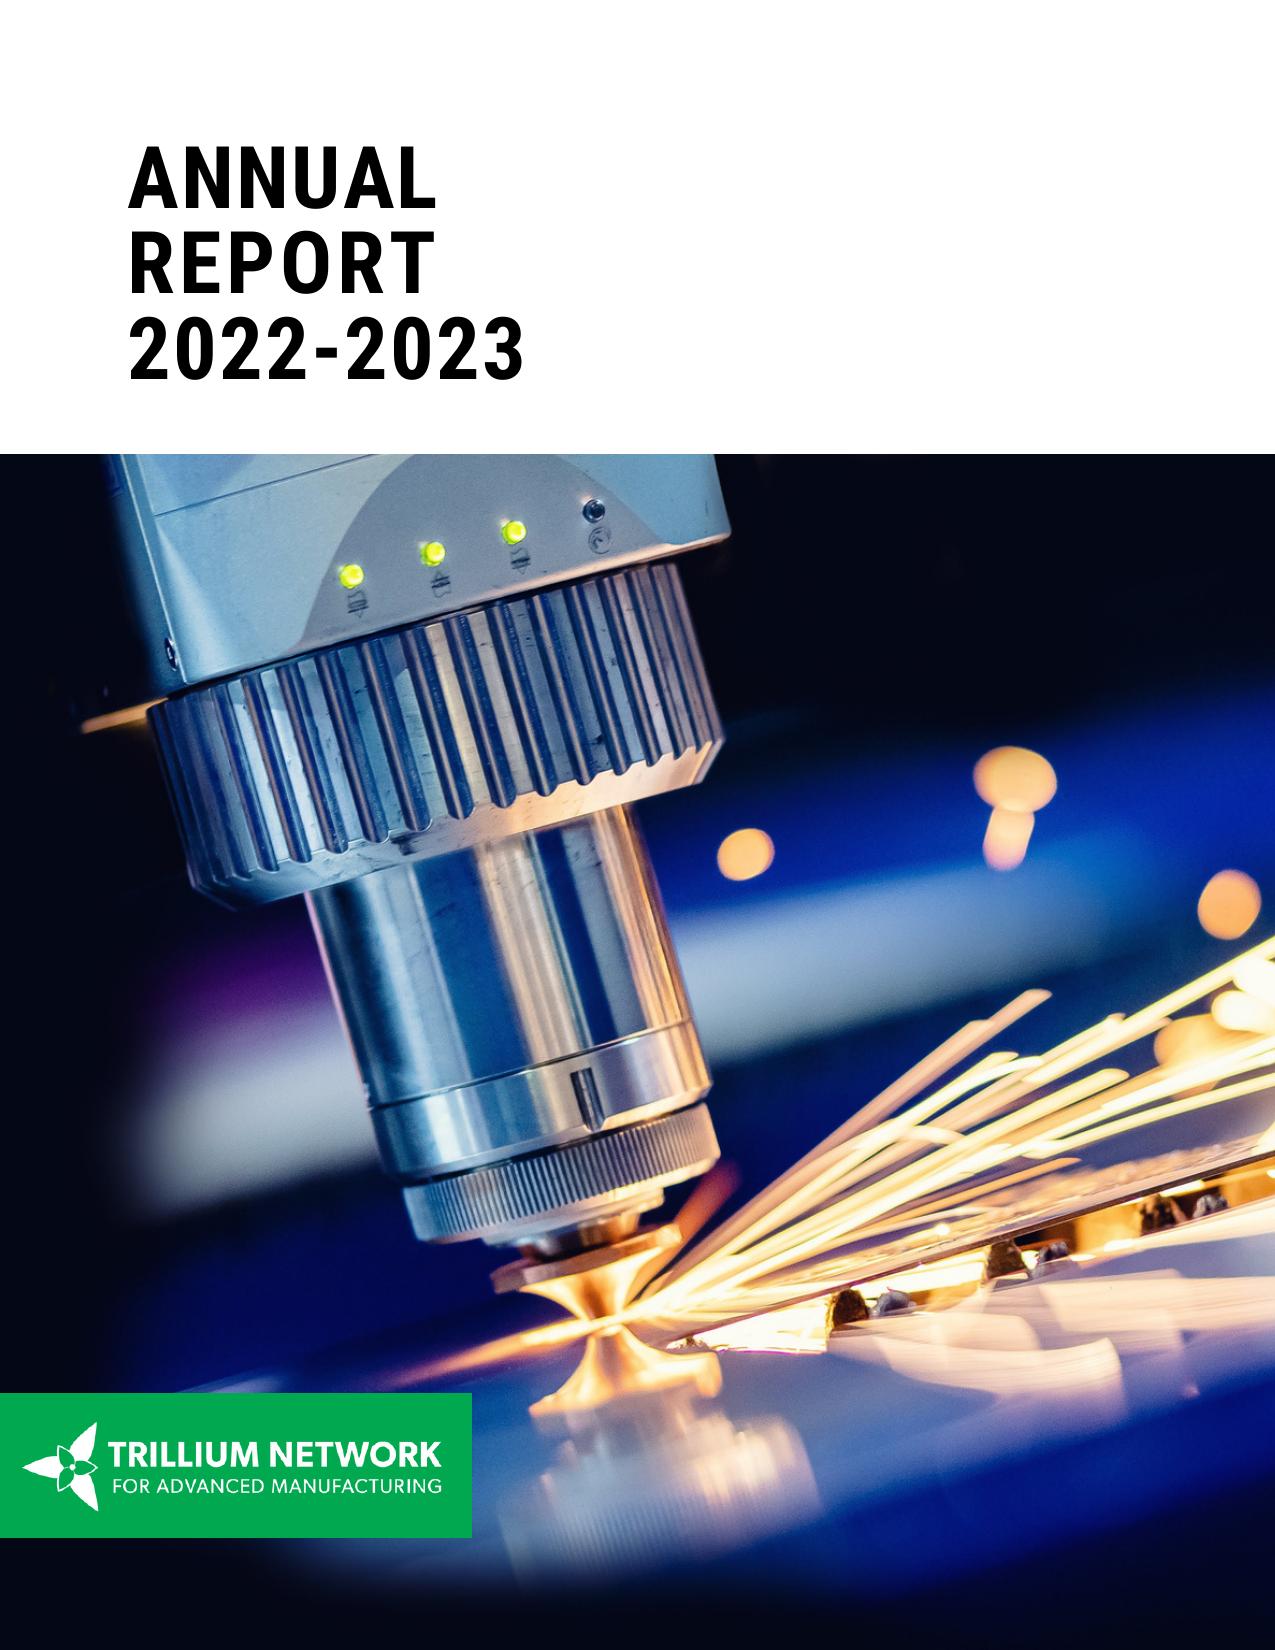 TRILLIUMMFG 2023 Annual Report